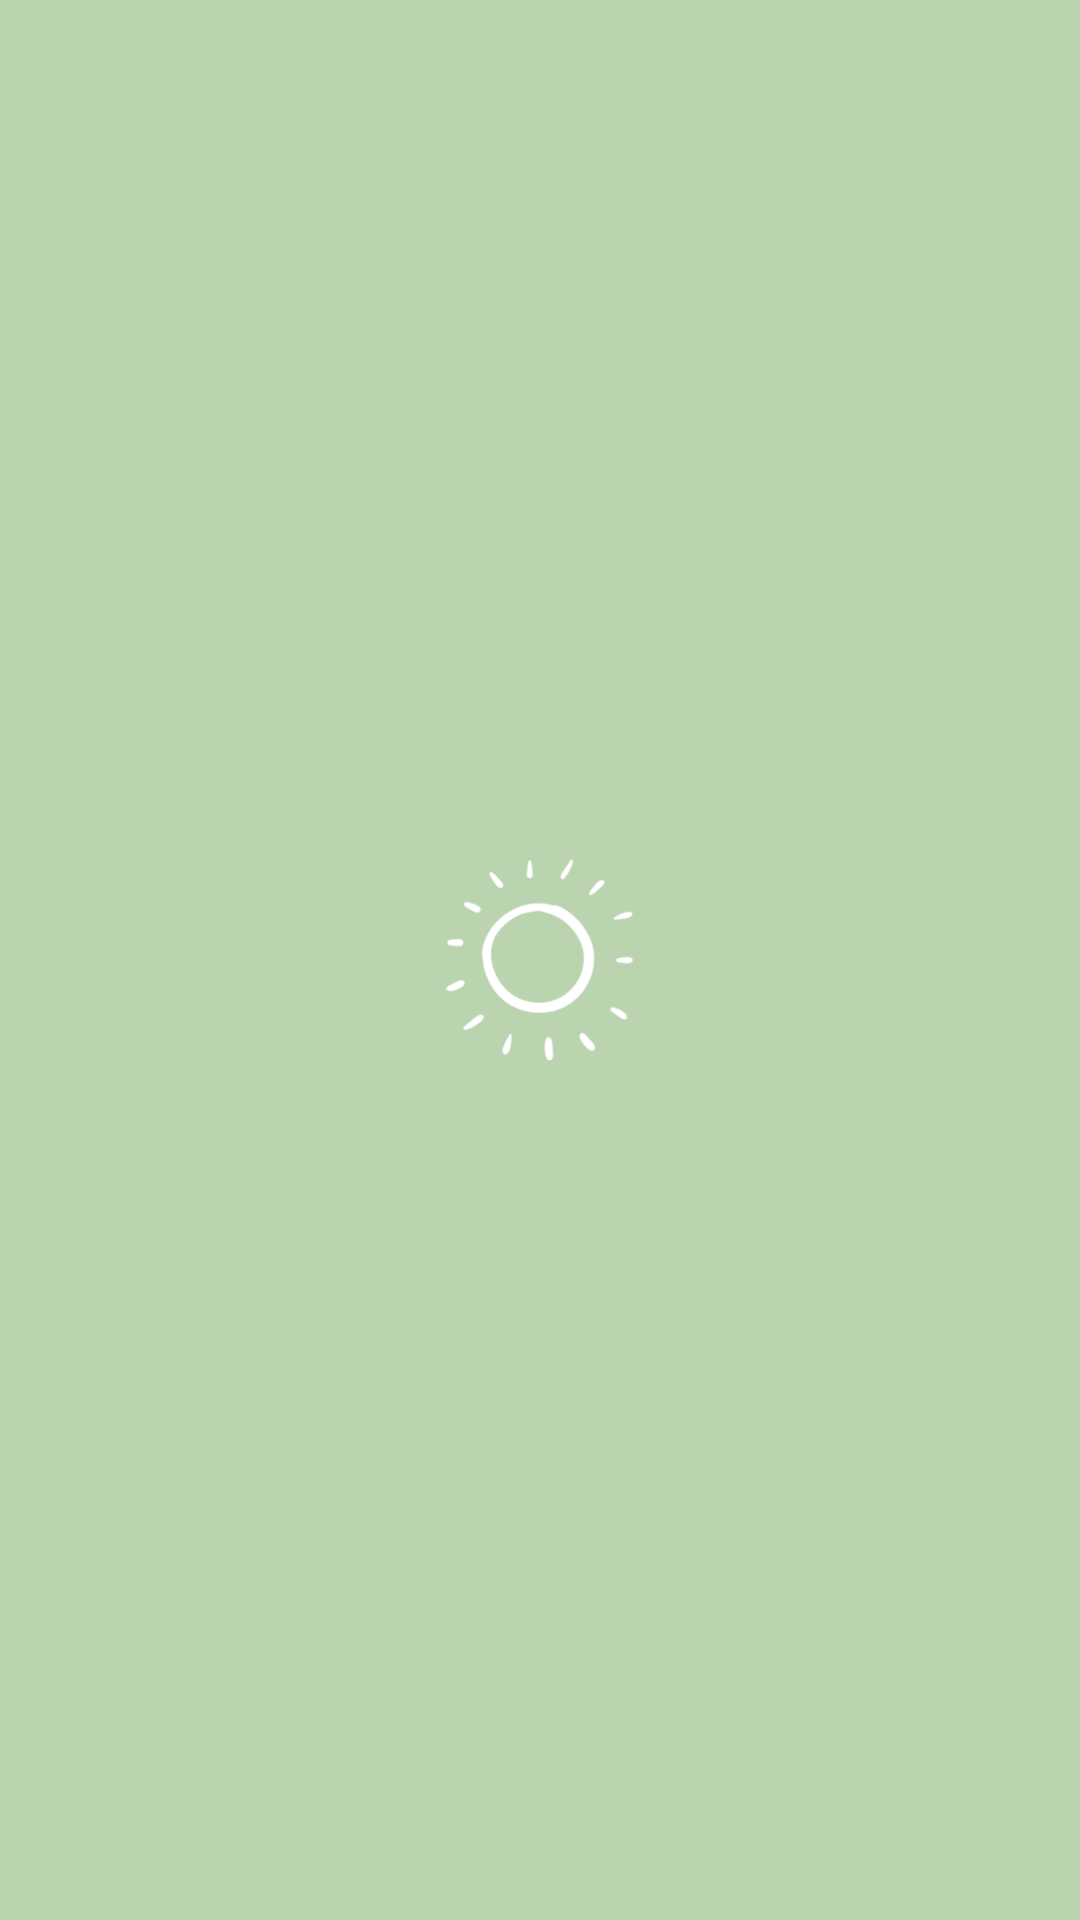 A sun symbol on green background - Green, sun, mint green, minimalist, simple, pastel minimalist, soft green, pastel green, light green, neon green, lime green